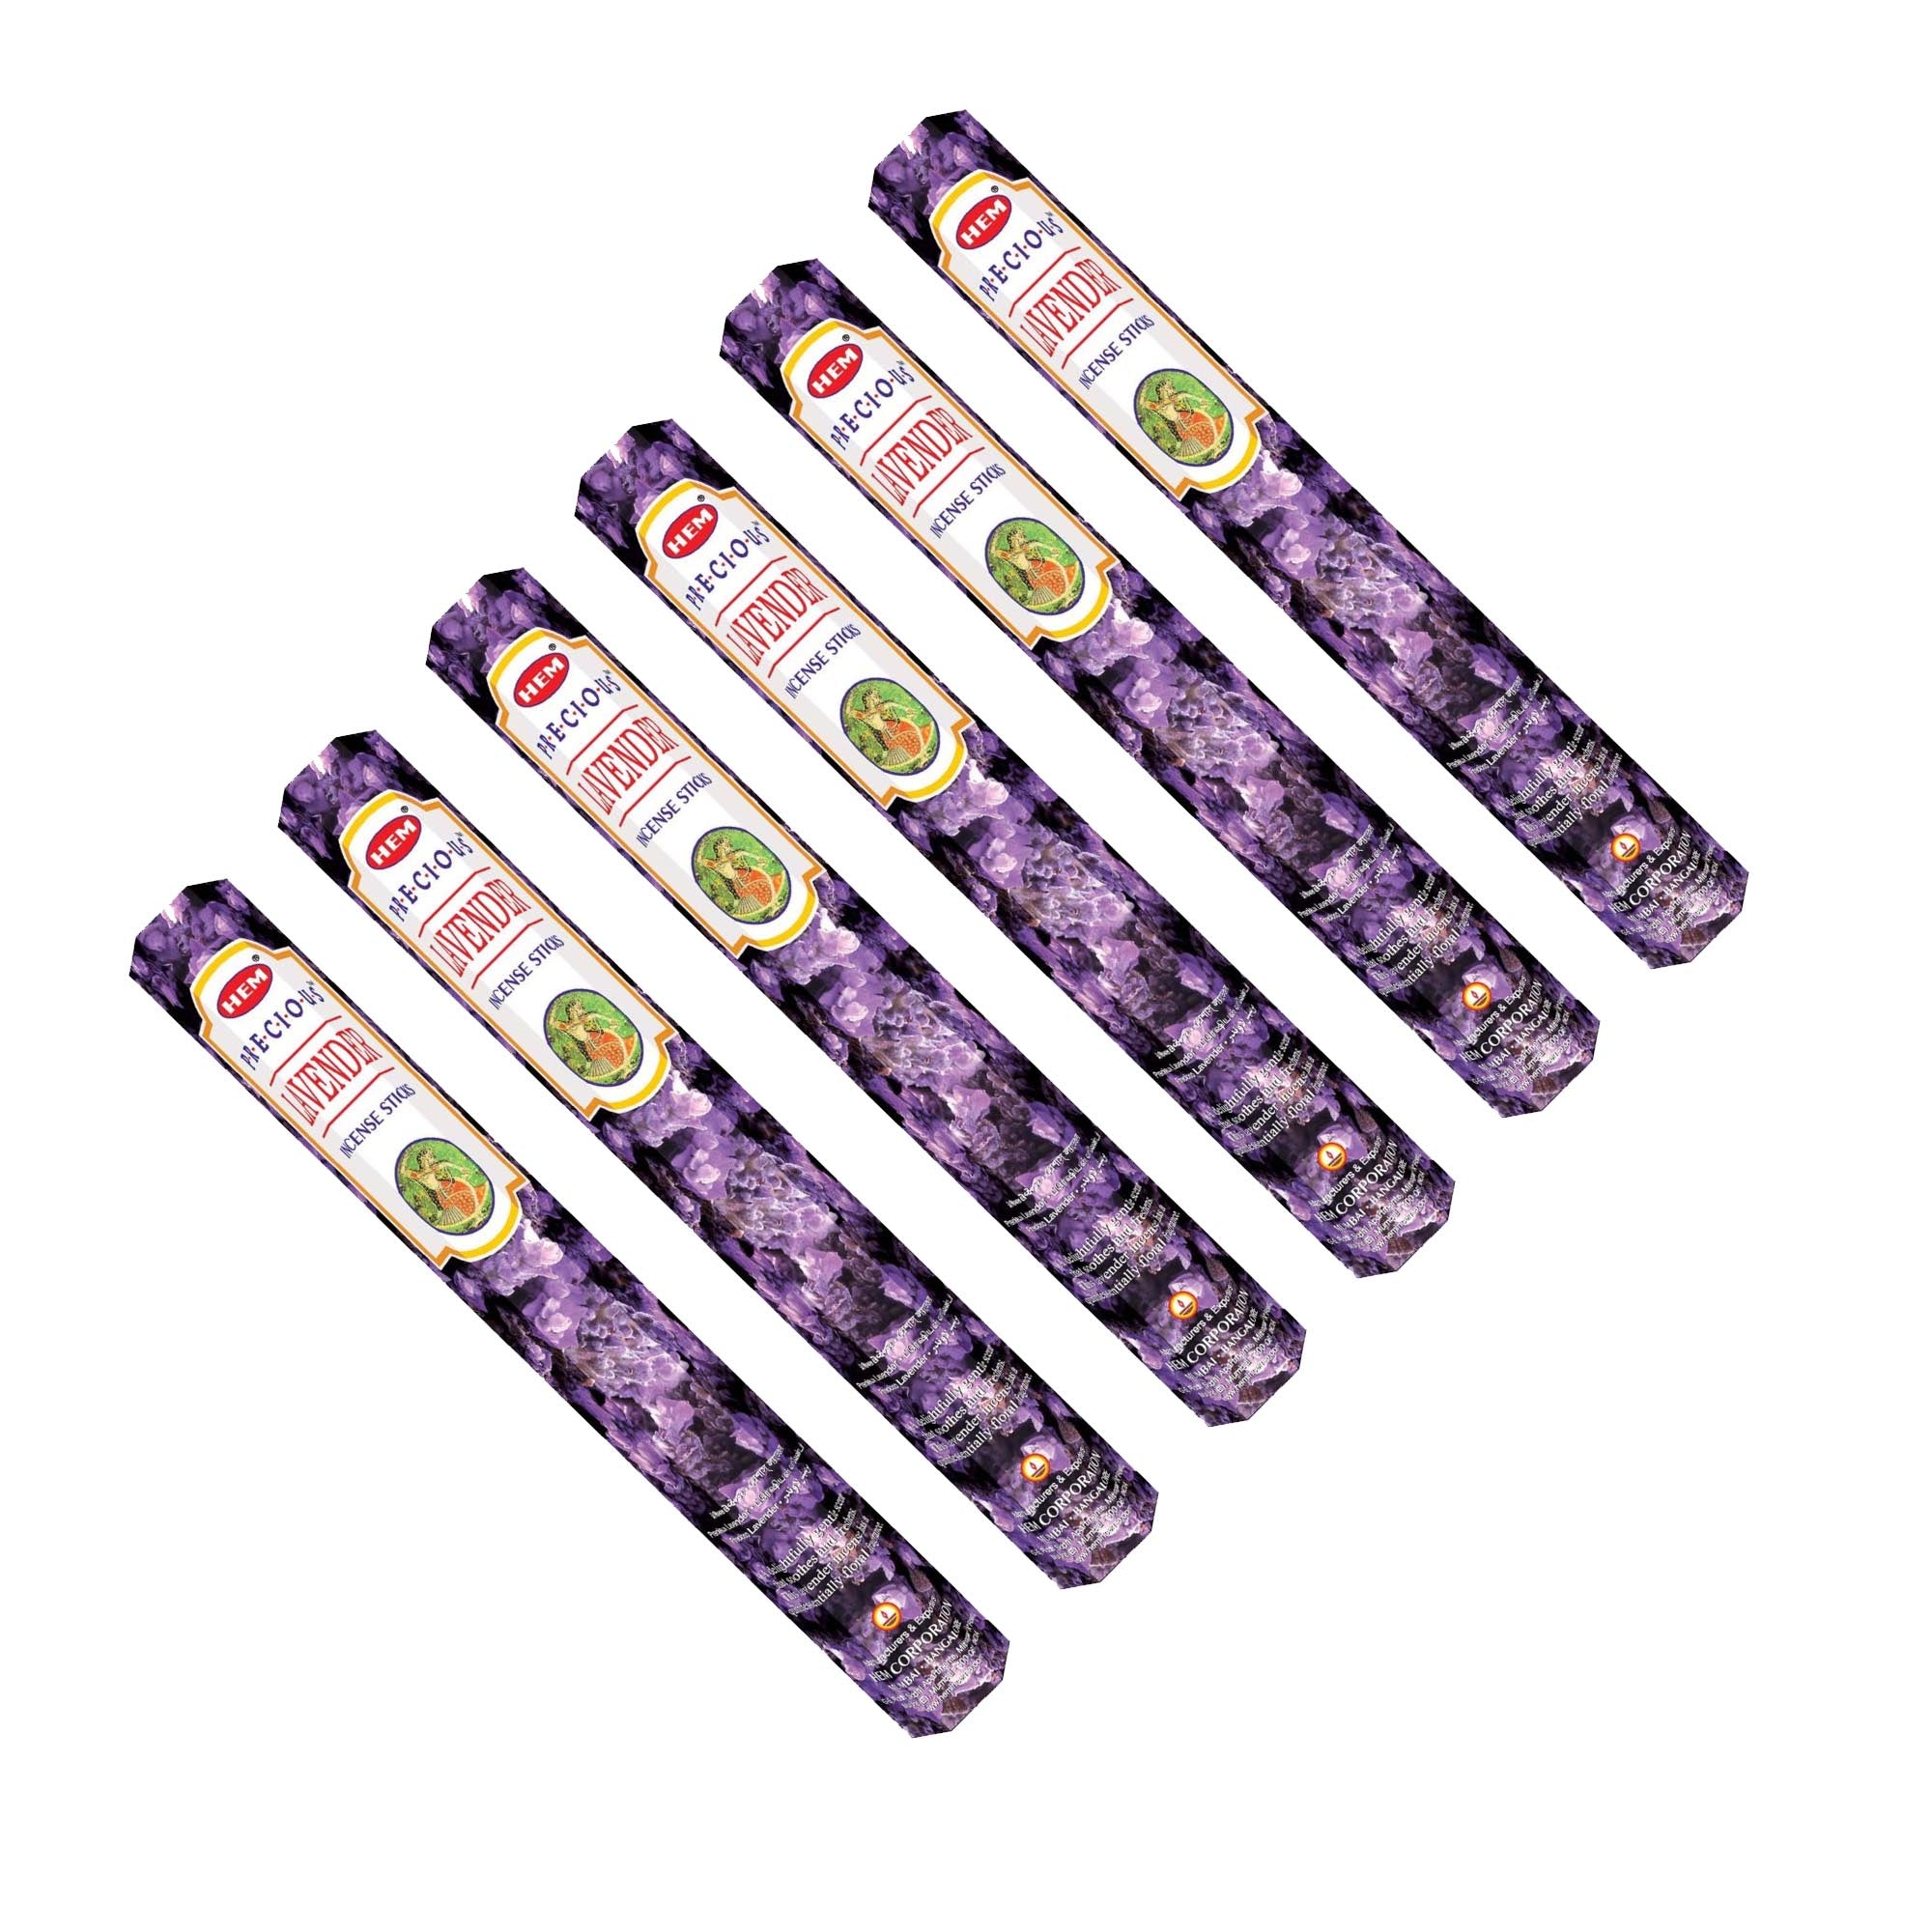 HEM - Hexagon - Precious Lavender Incense Sticks